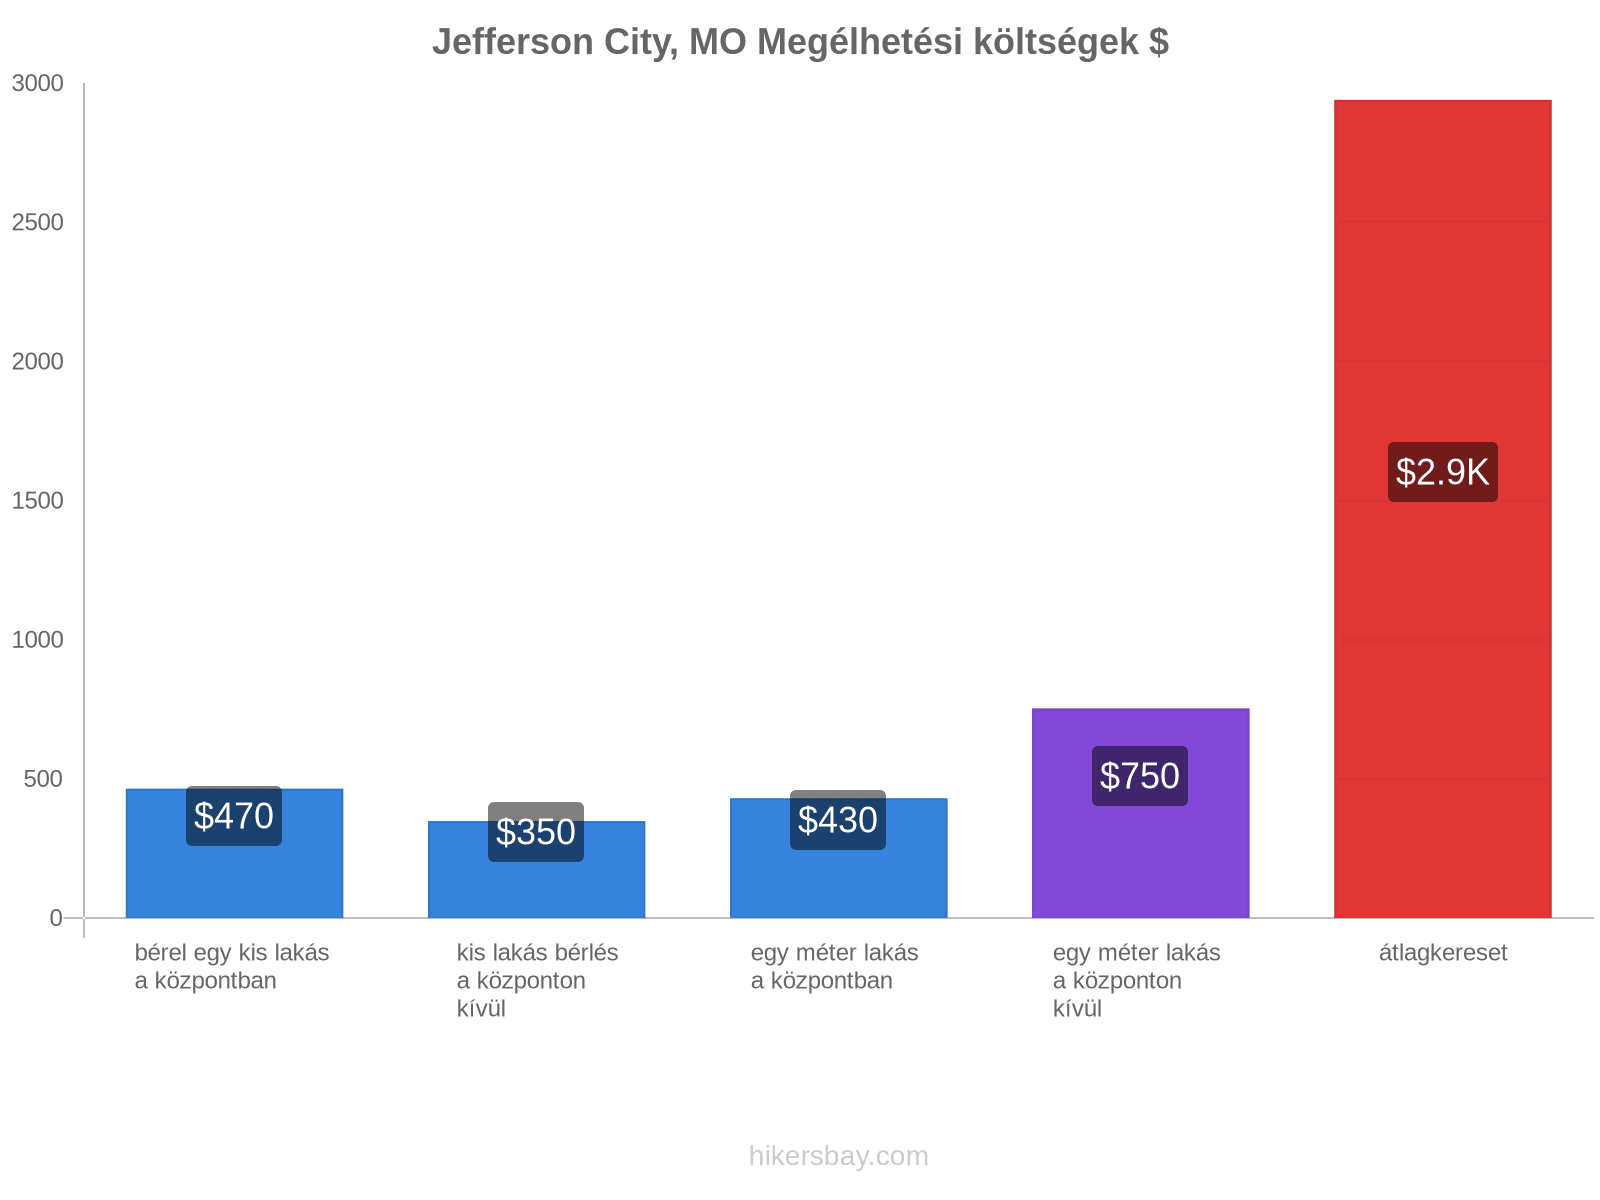 Jefferson City, MO megélhetési költségek hikersbay.com